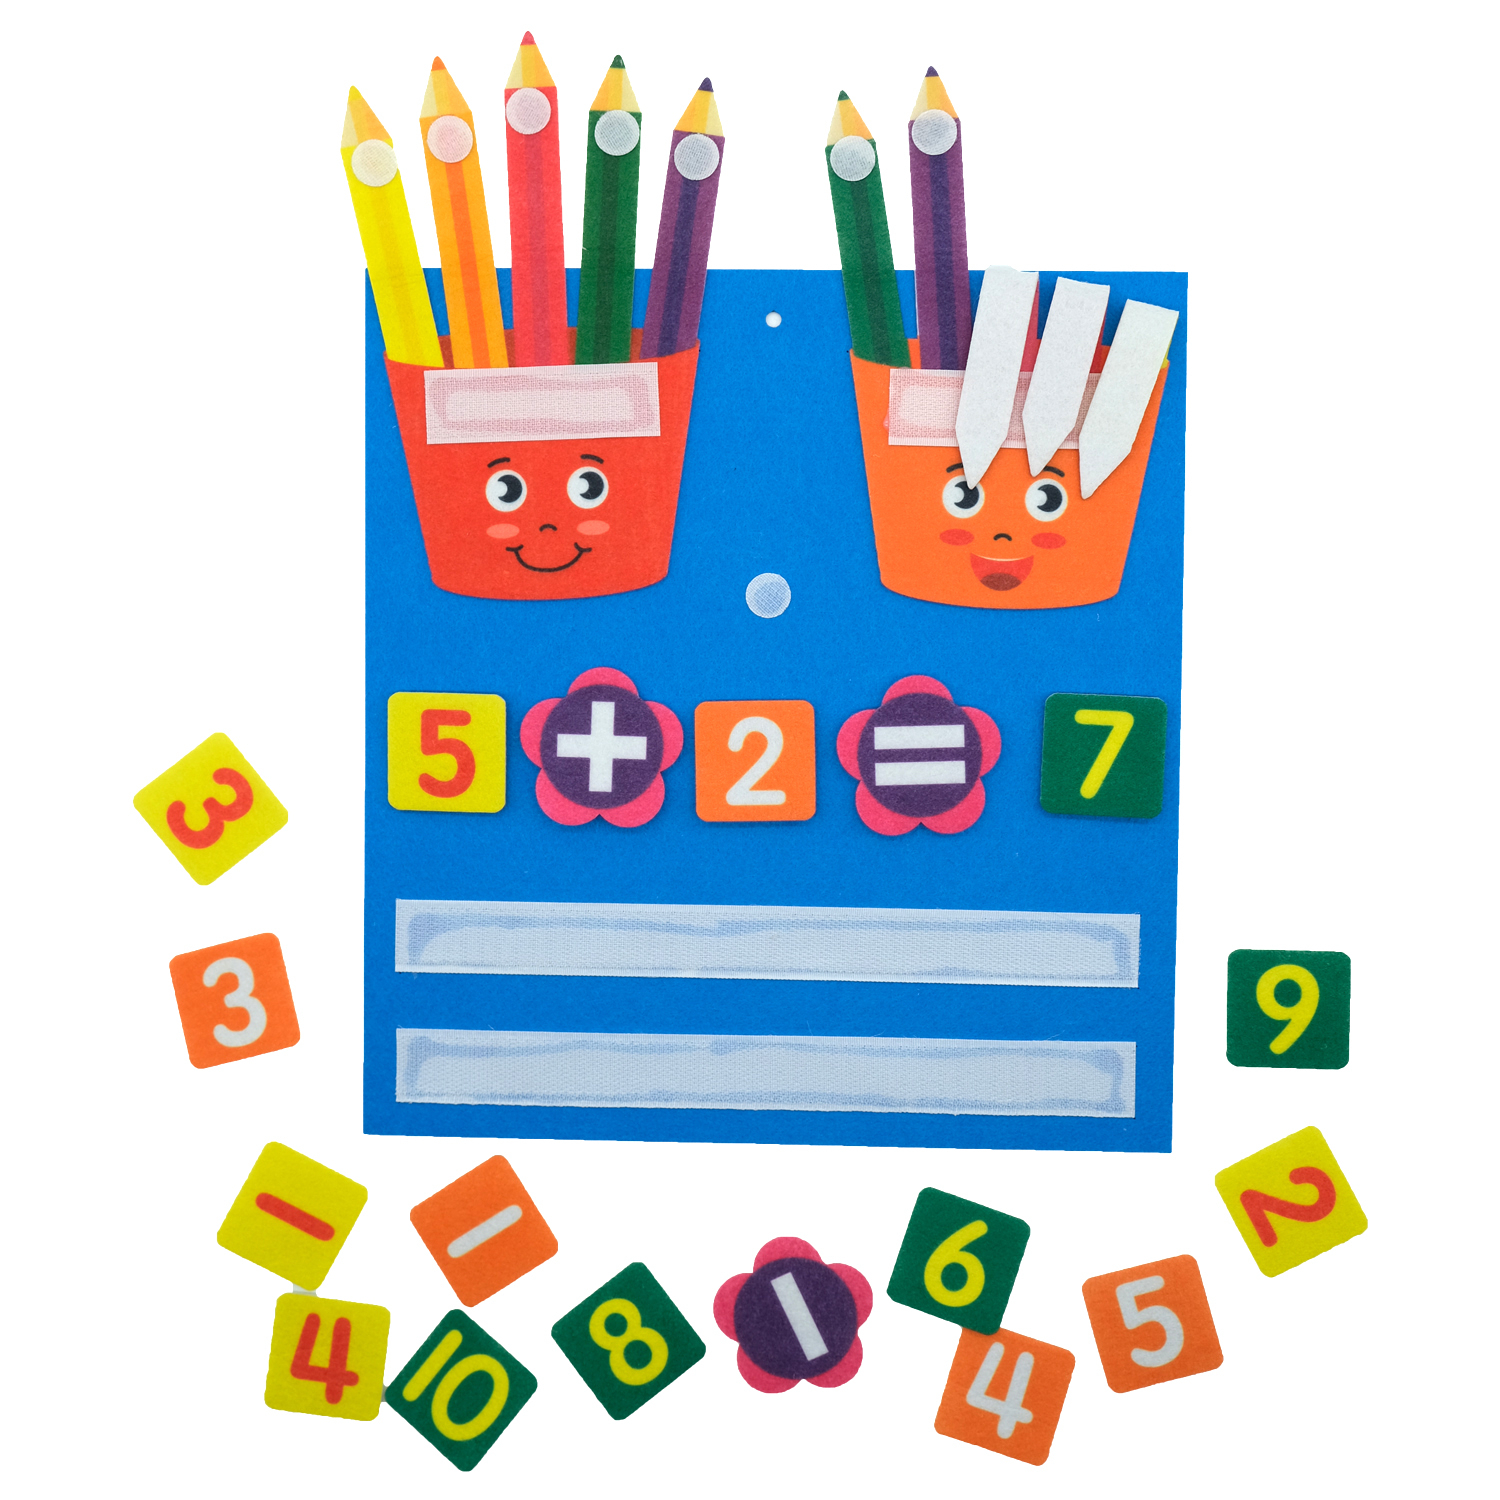 Busy board montessori multicolore pour apprendre à compter, avec un tableau bleu en feutre avec de nombreux chiffres à scratcher